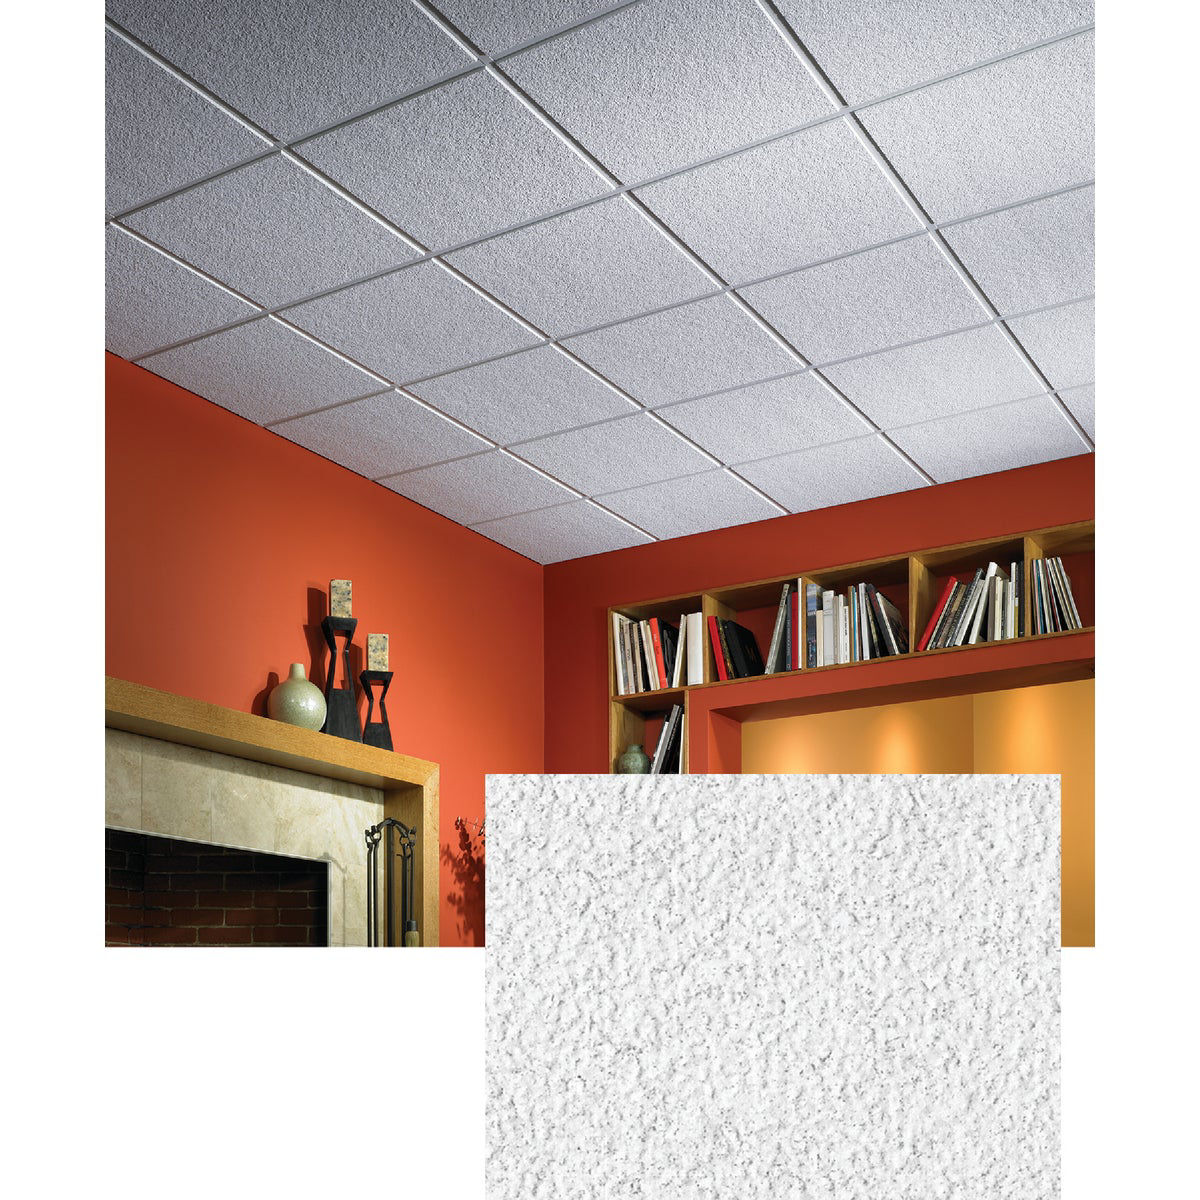 Acoustical Ceiling Panels